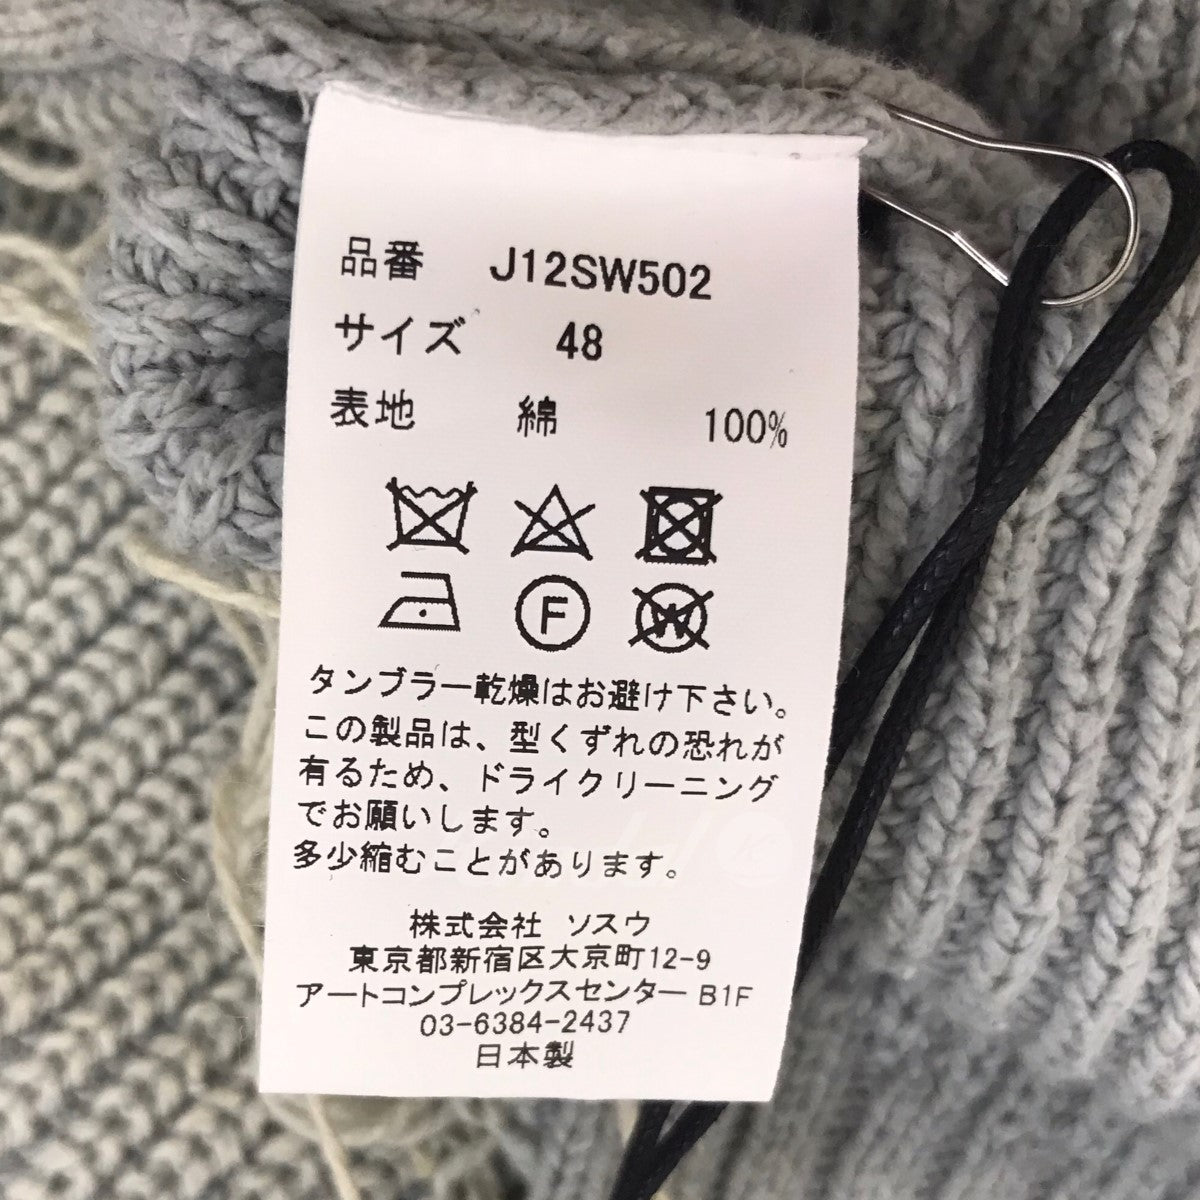 Maison MIHARA YASUHIRO(メゾンミハラヤスヒロ) 24SS 「Bleached Knit Sweater 」ダメージ加工ニット